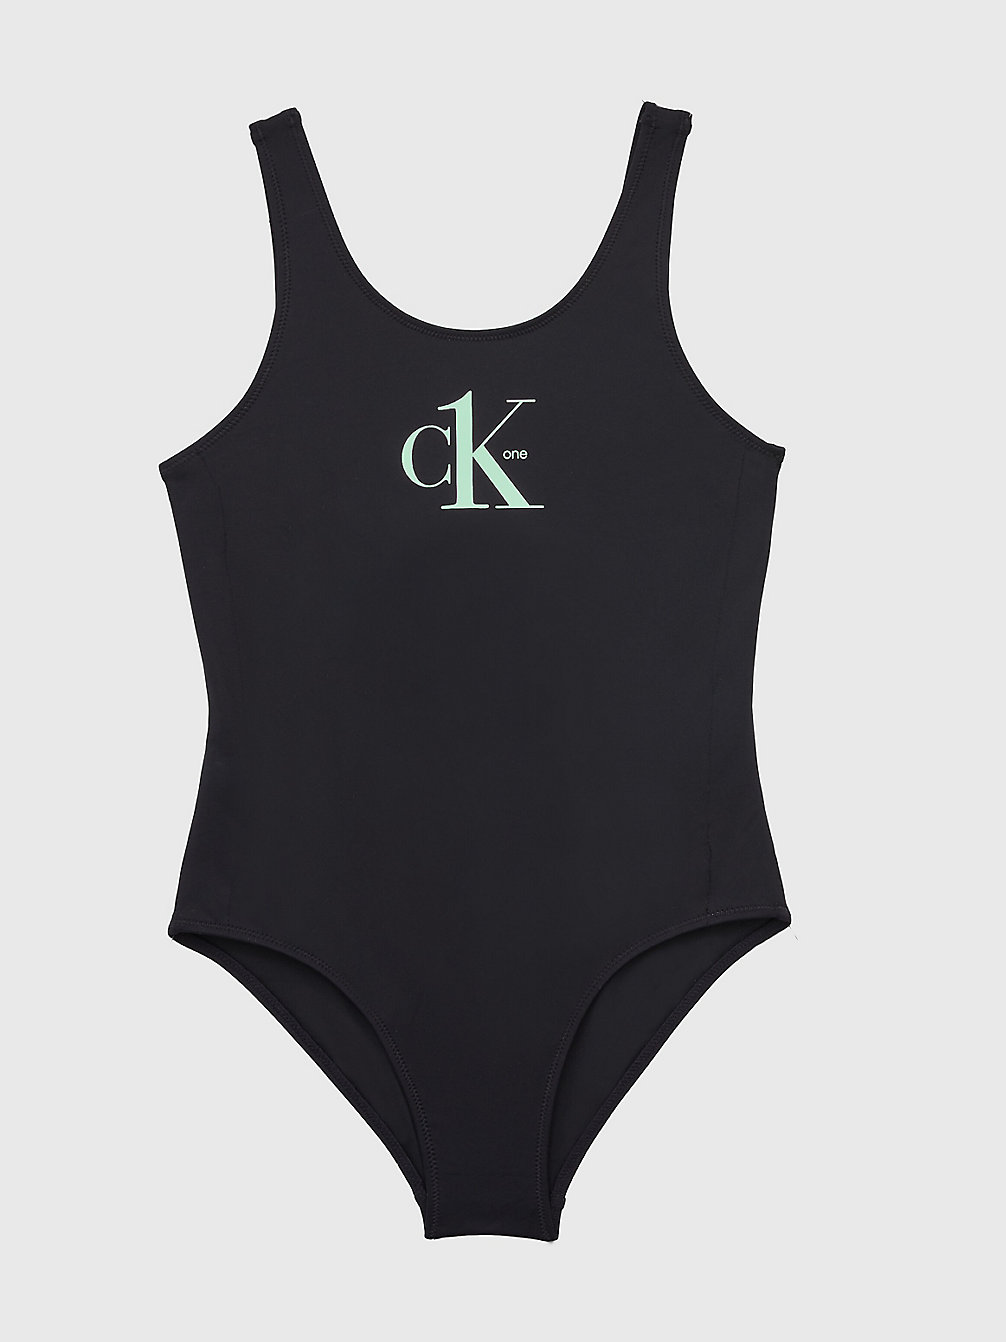 PVH BLACK Girls Swimsuit - CK One undefined girls Calvin Klein